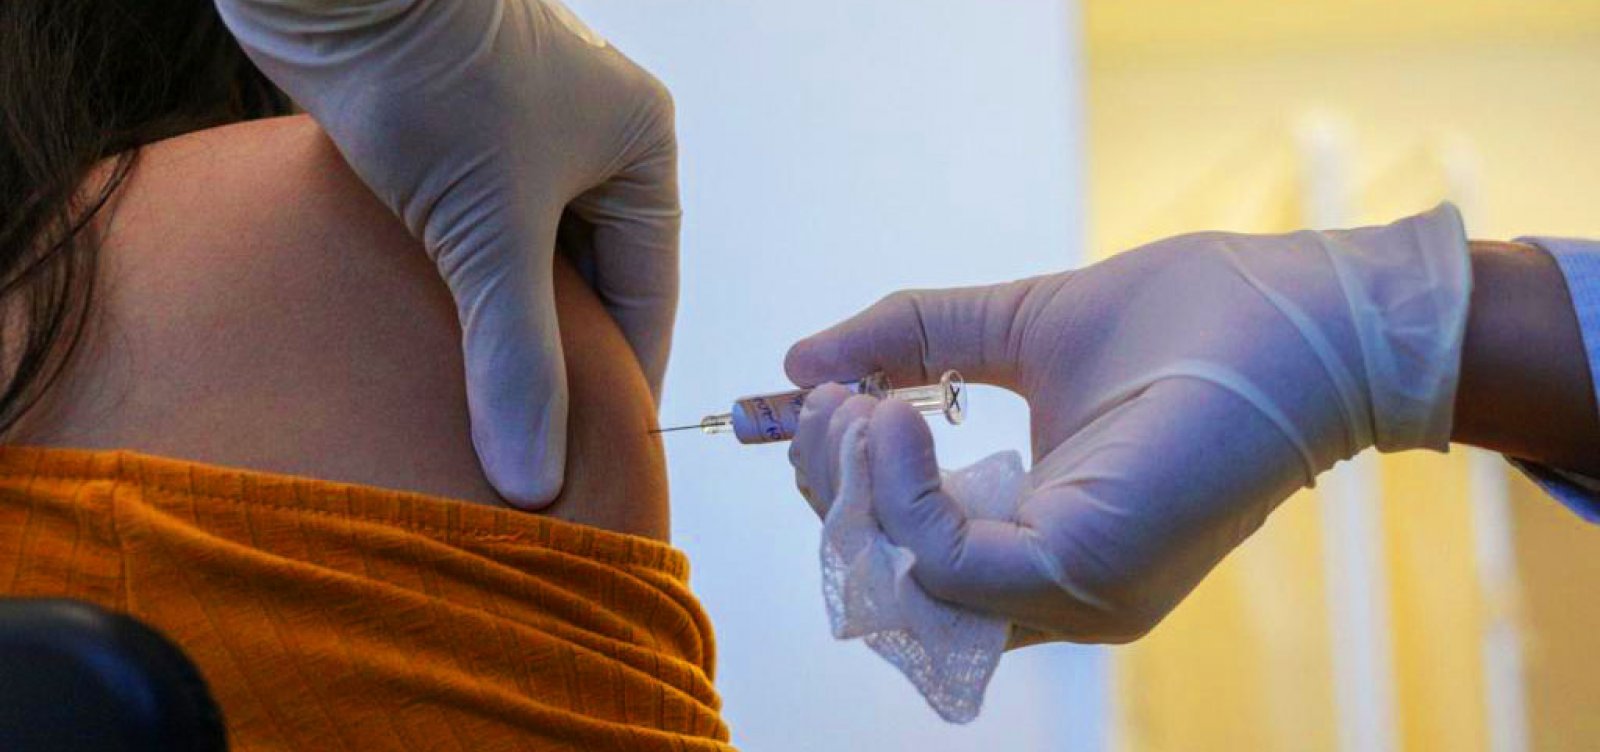 [Covid-19: vacina russa deve garantir imunidade por no mínimo 2 anos, dizem cientistas]